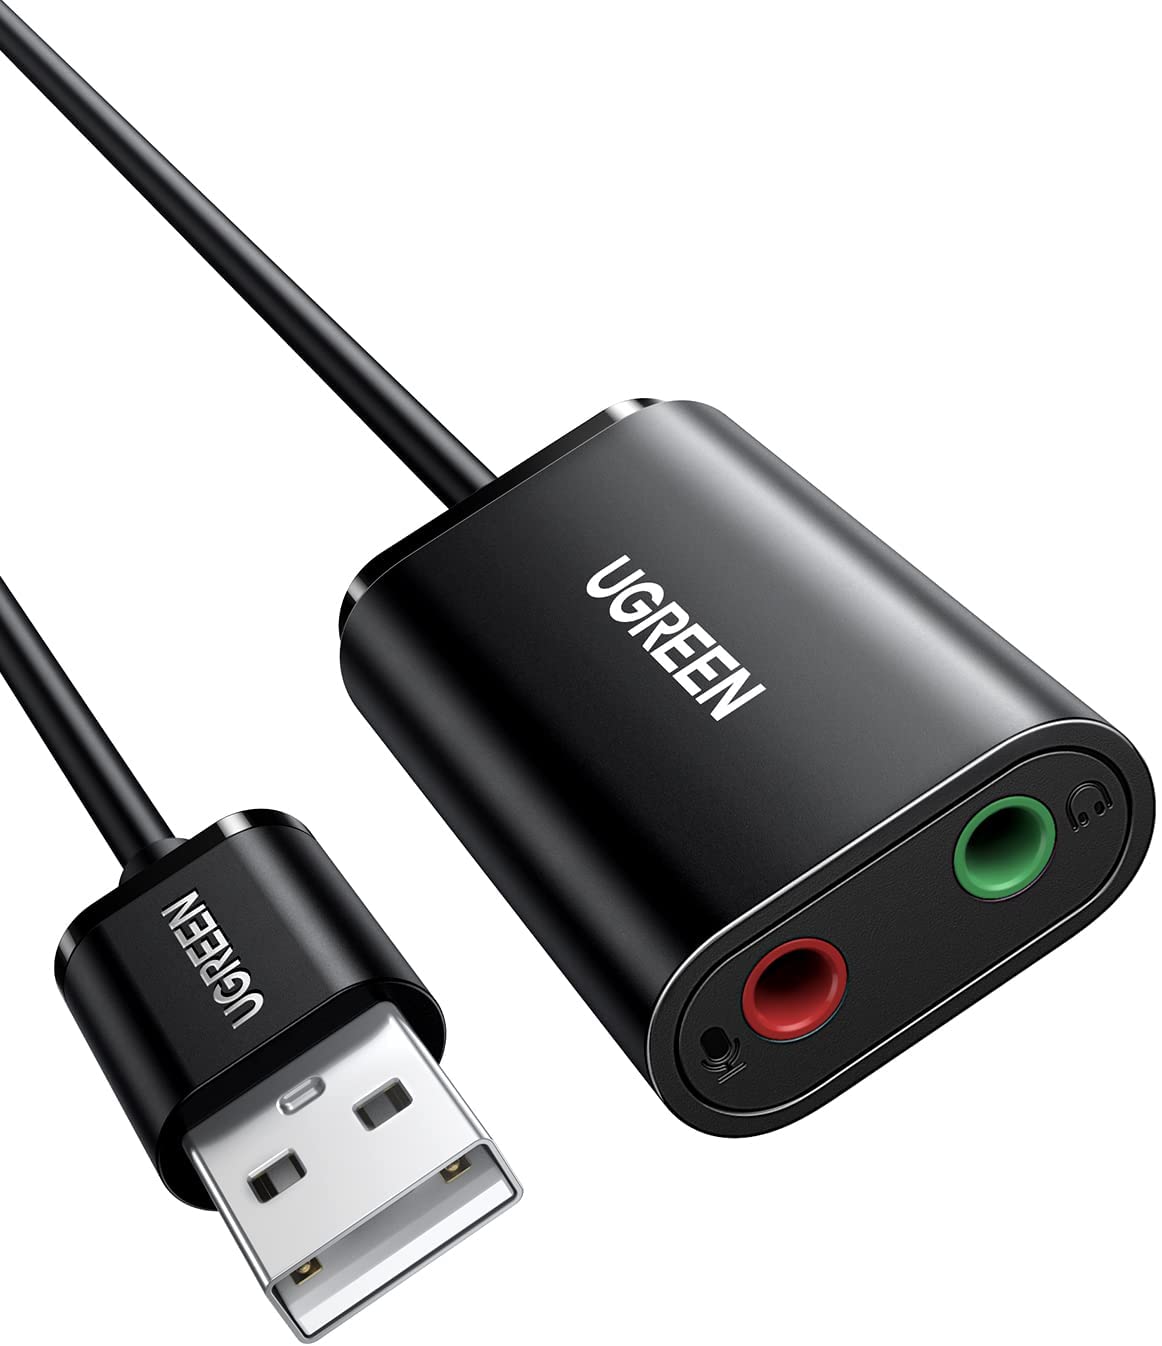 30724 Звуковая карта внешняя UGREEN US205, USB to 2 AUX 3.5mm (микрофонный вход + аудиовыход), с проводом 15cm, цвет: черный